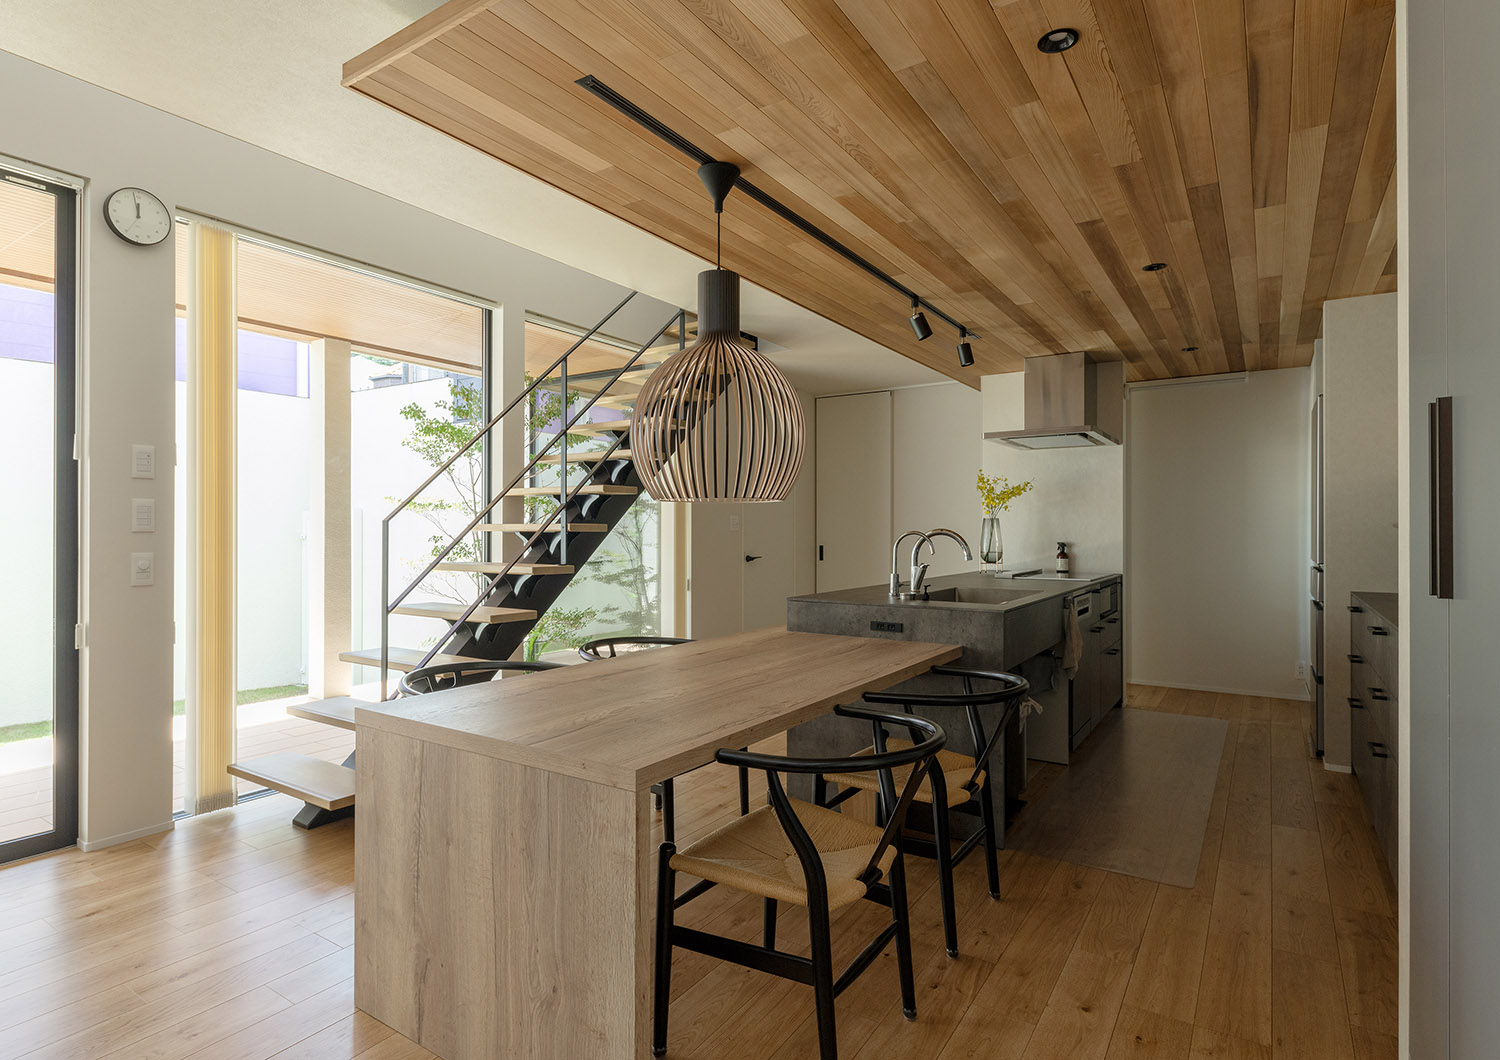 ペニンシュラキッチンと木のダイニングテーブルが横並びになっている様子・デザイン住宅